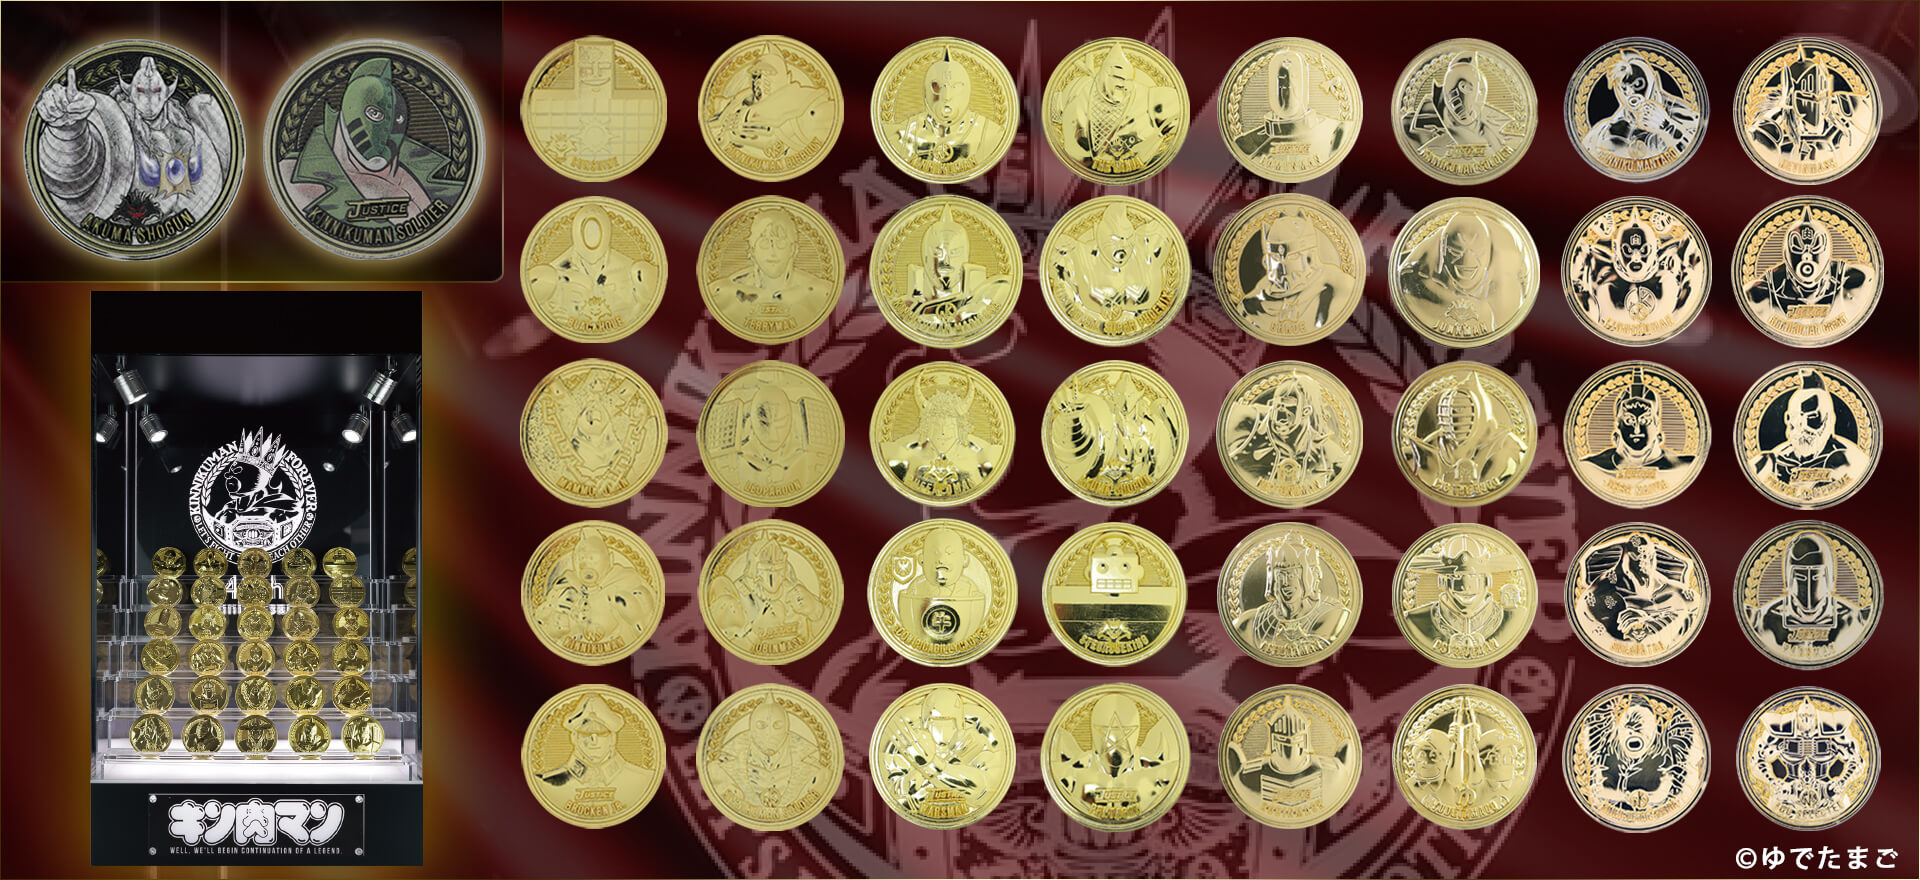 キン肉マンメダルコレクションDXディスプレイケース KIN(金)肉メダルスペシャルセット (KIN(金)肉メダル 40種付き)